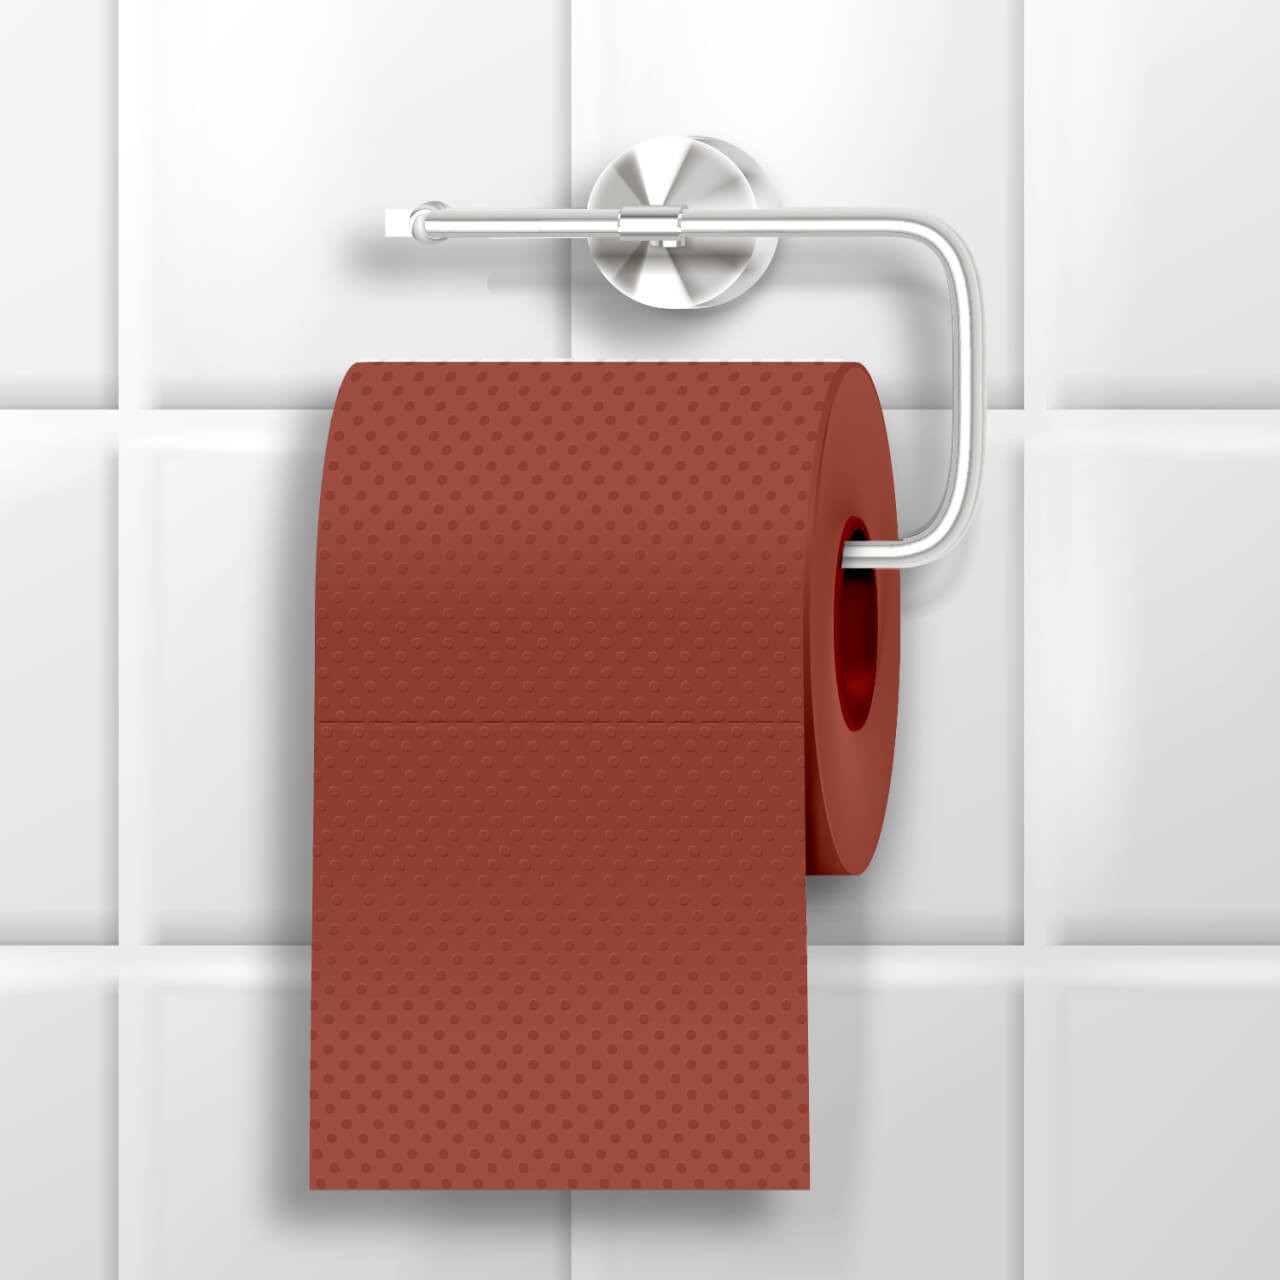 Mad Monkey - Toilettenpapier im Schleifpapier-Design von Mad Monkey